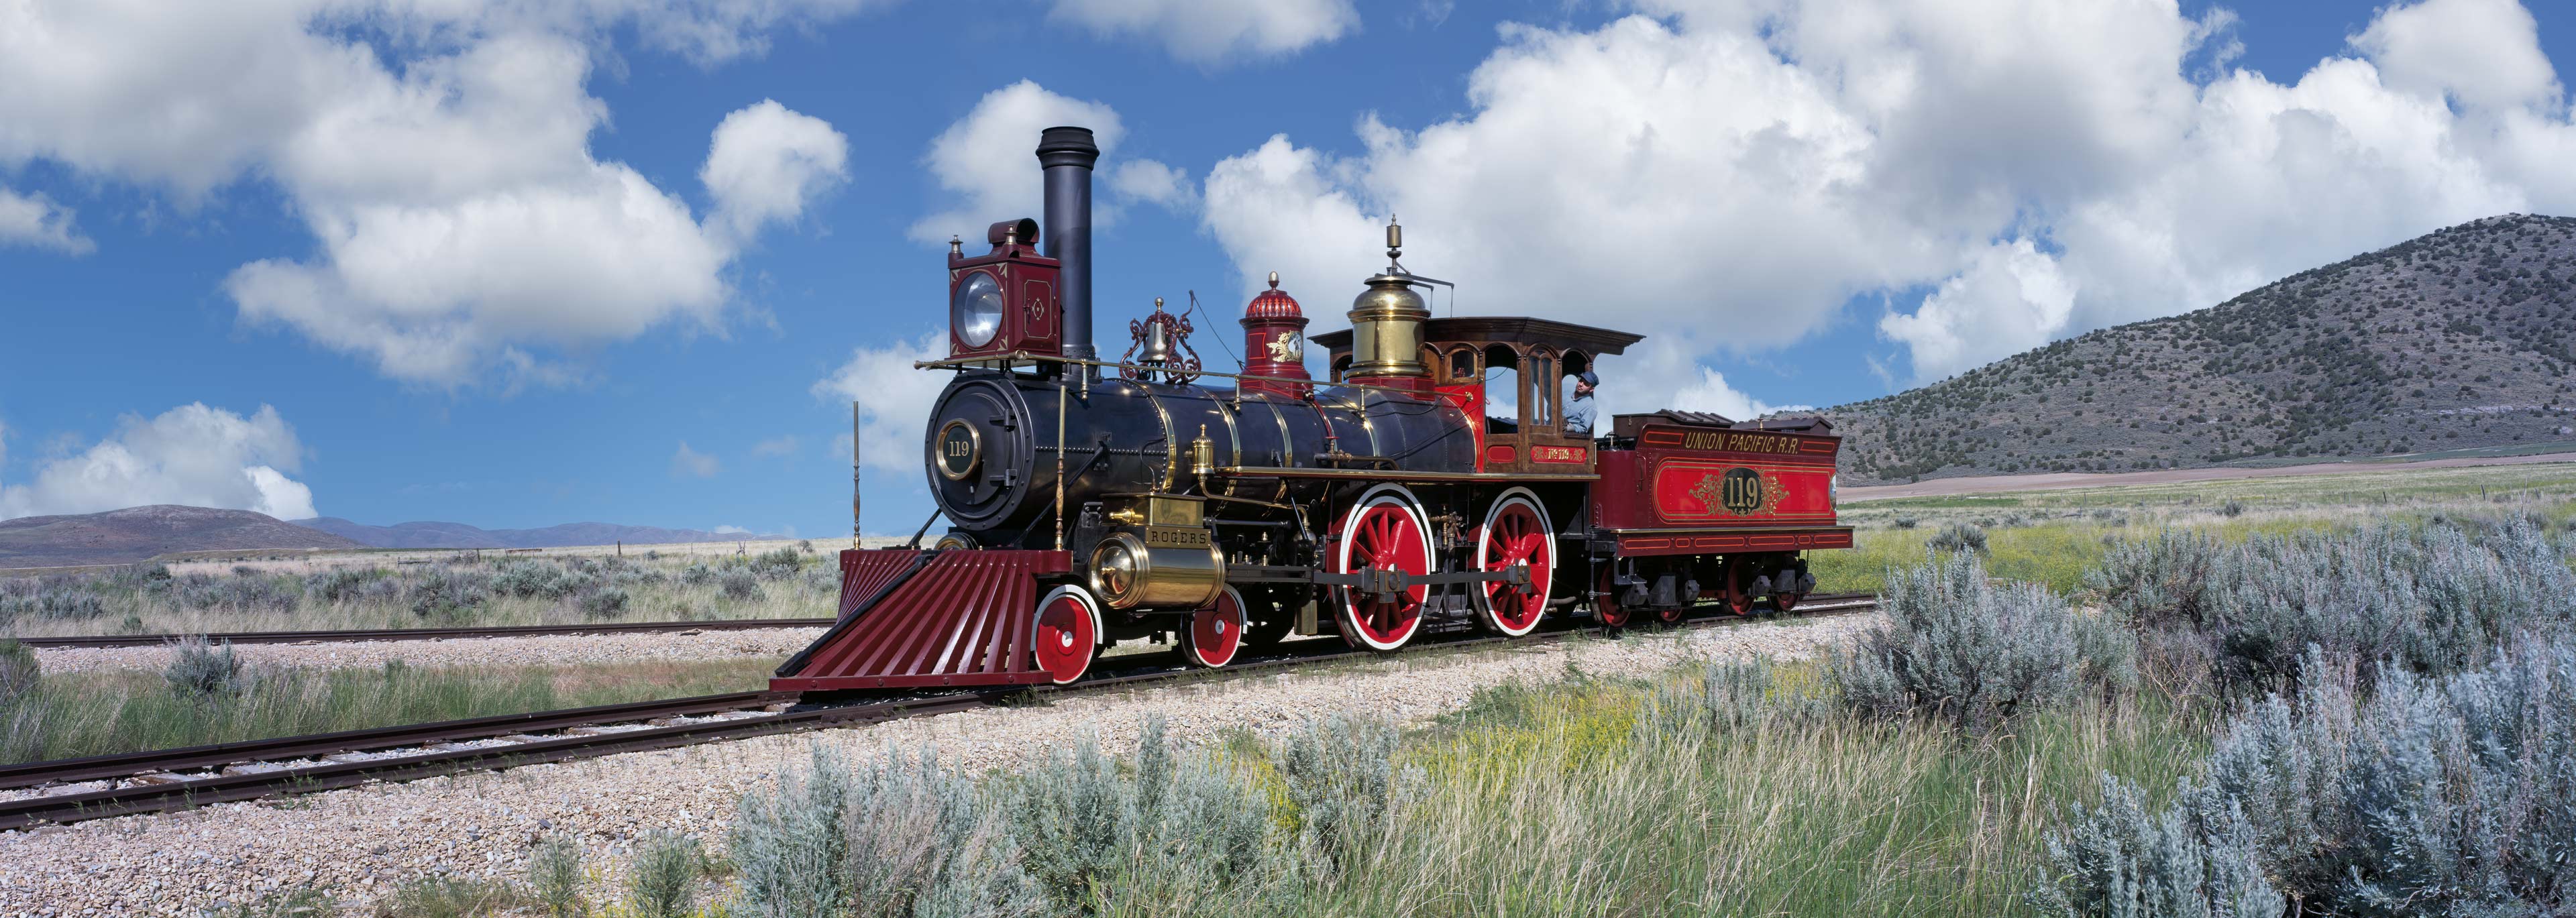 Locomotive 119, Golden Spike, Utah, USA (40511.siskedit)